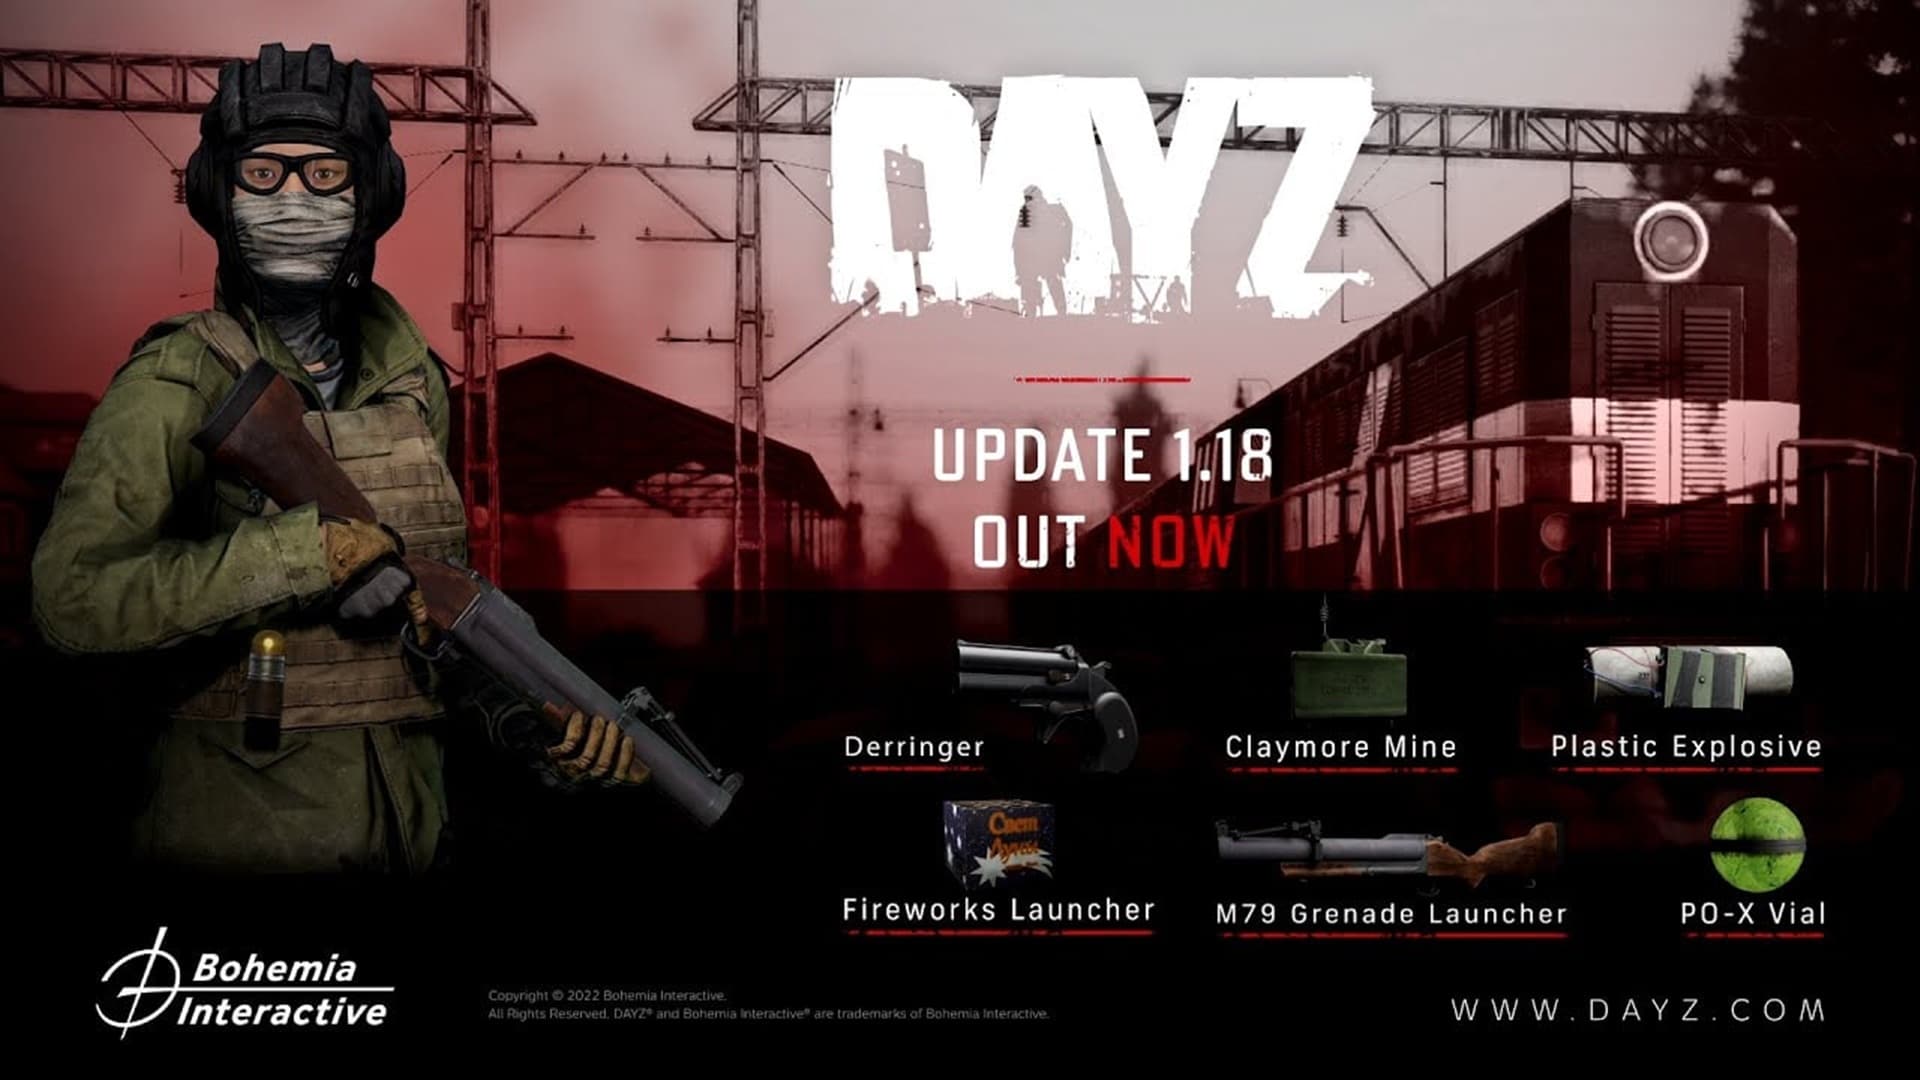 DayZ agrega fuegos artificiales y otros explosivos en la nueva actualización, GamersRD